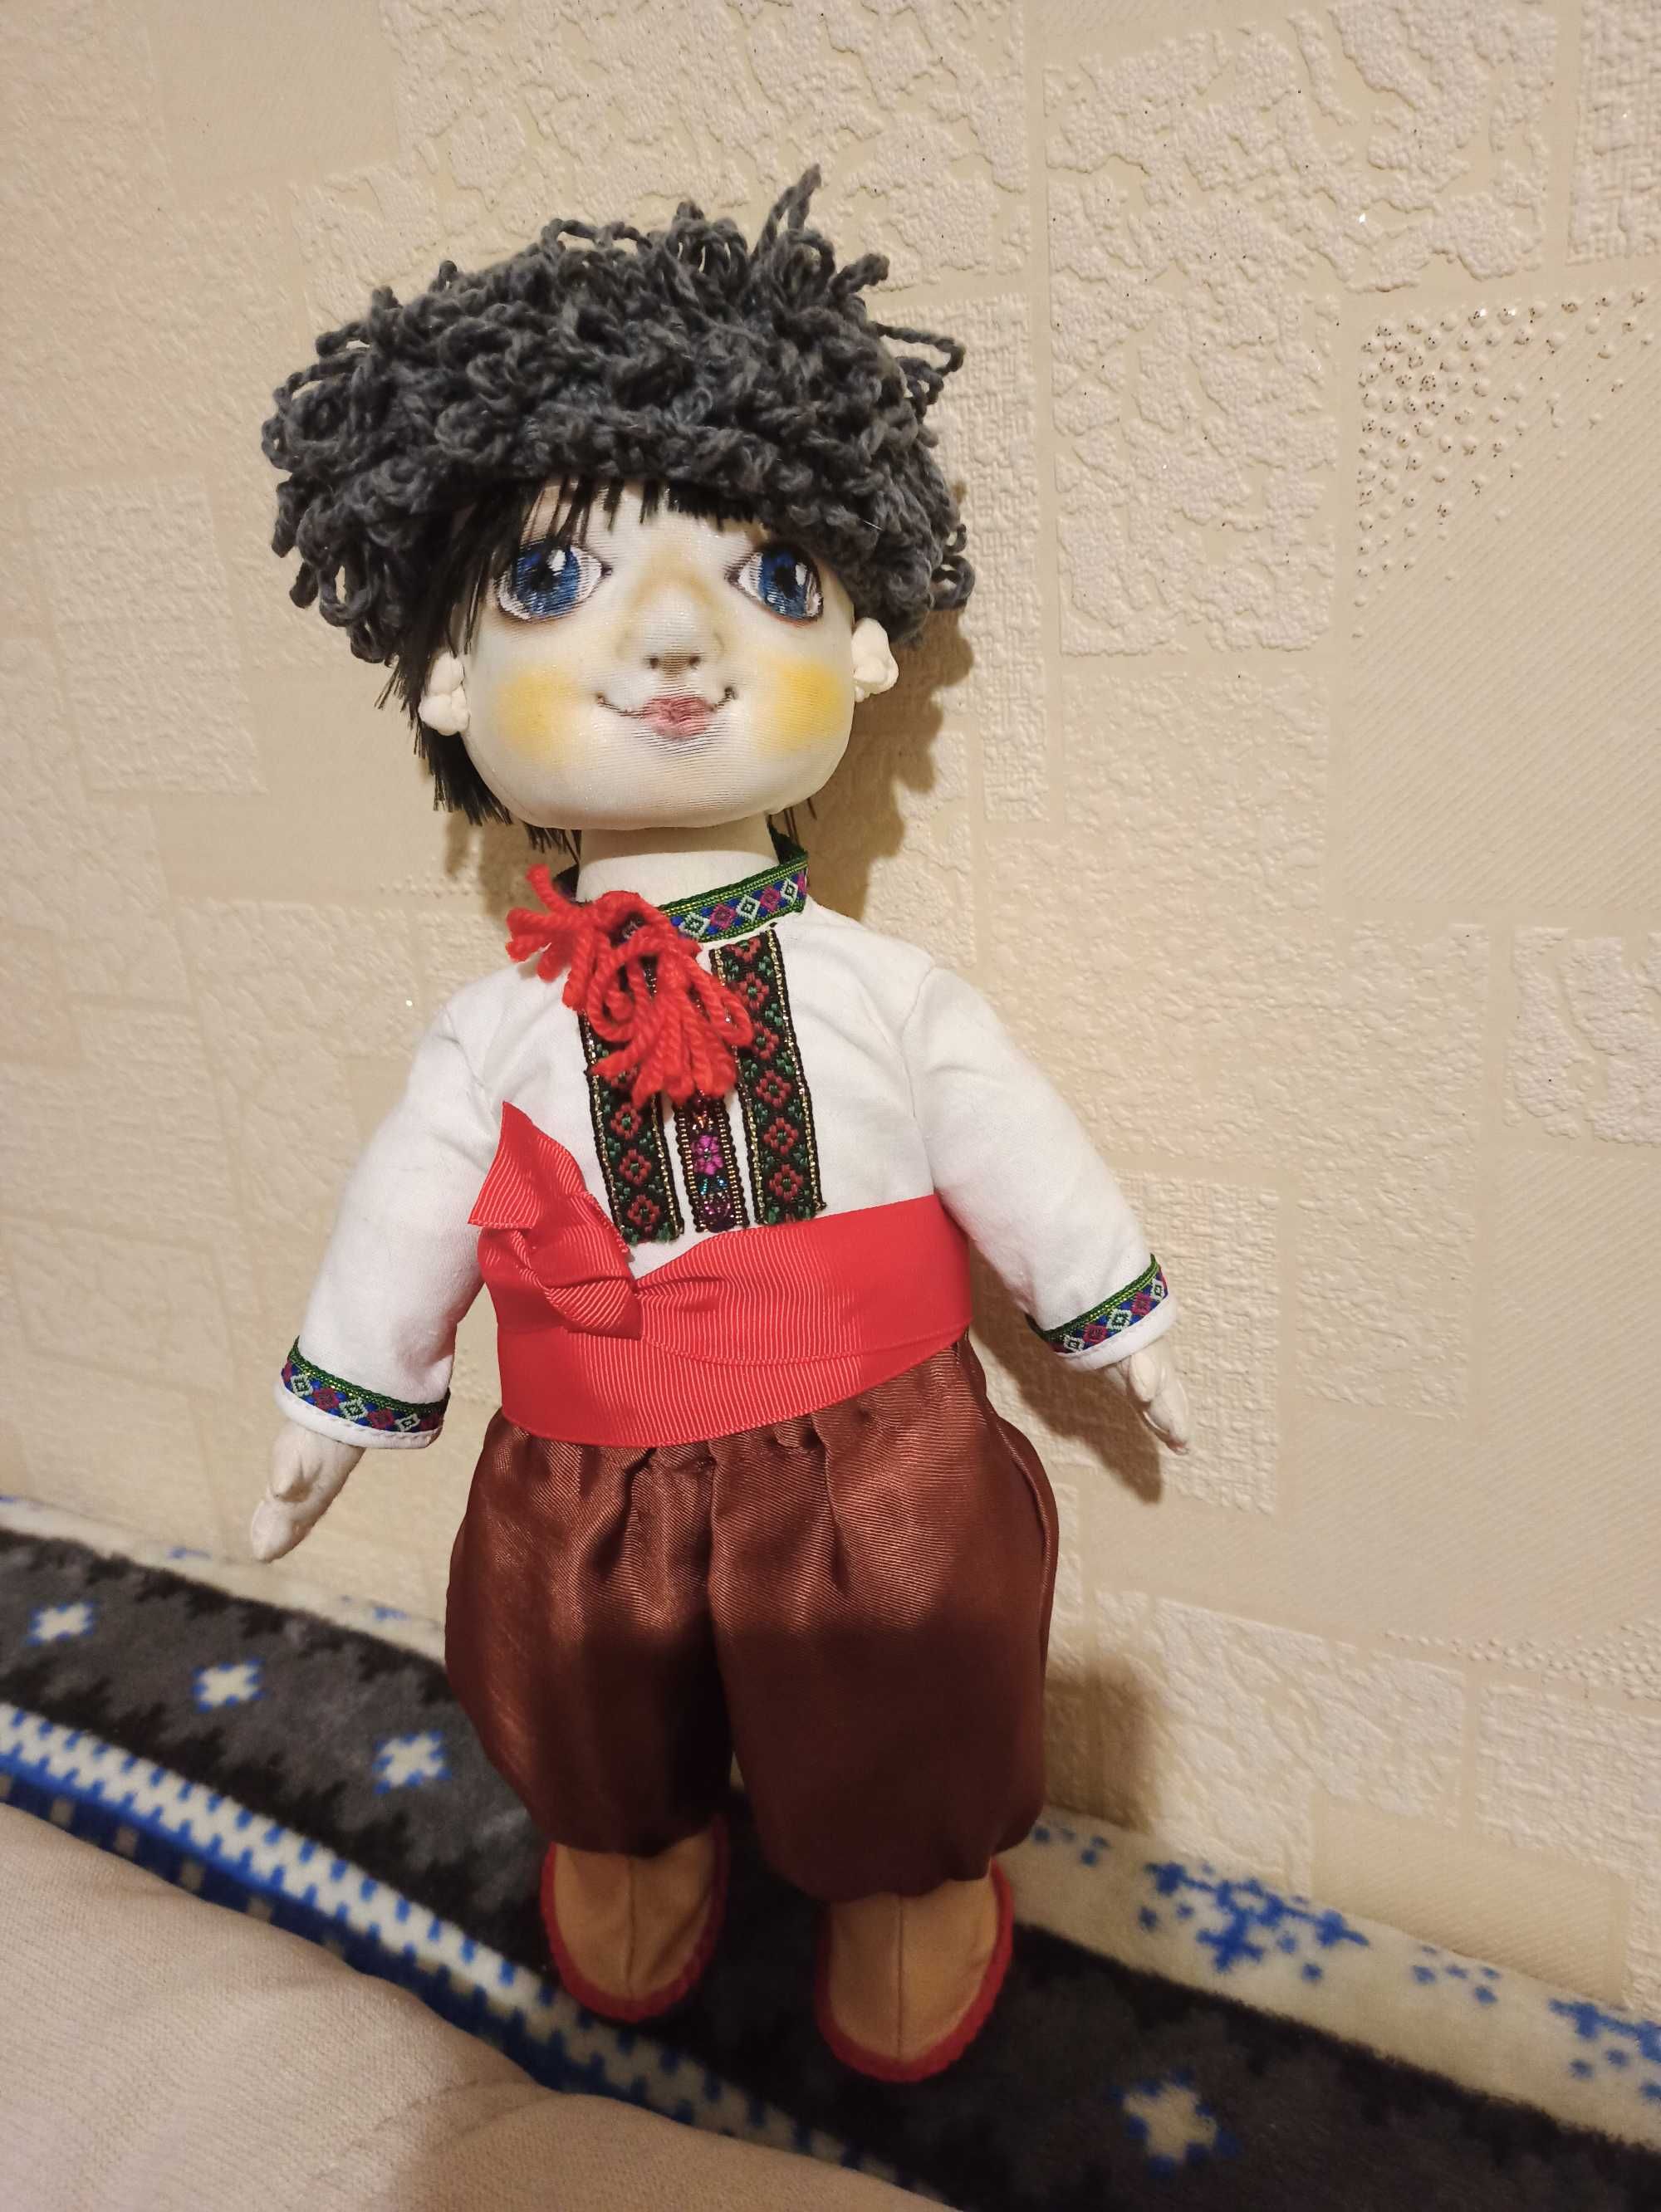 Kids іграшки лялька (кукла) текстильна Kозак Віталик